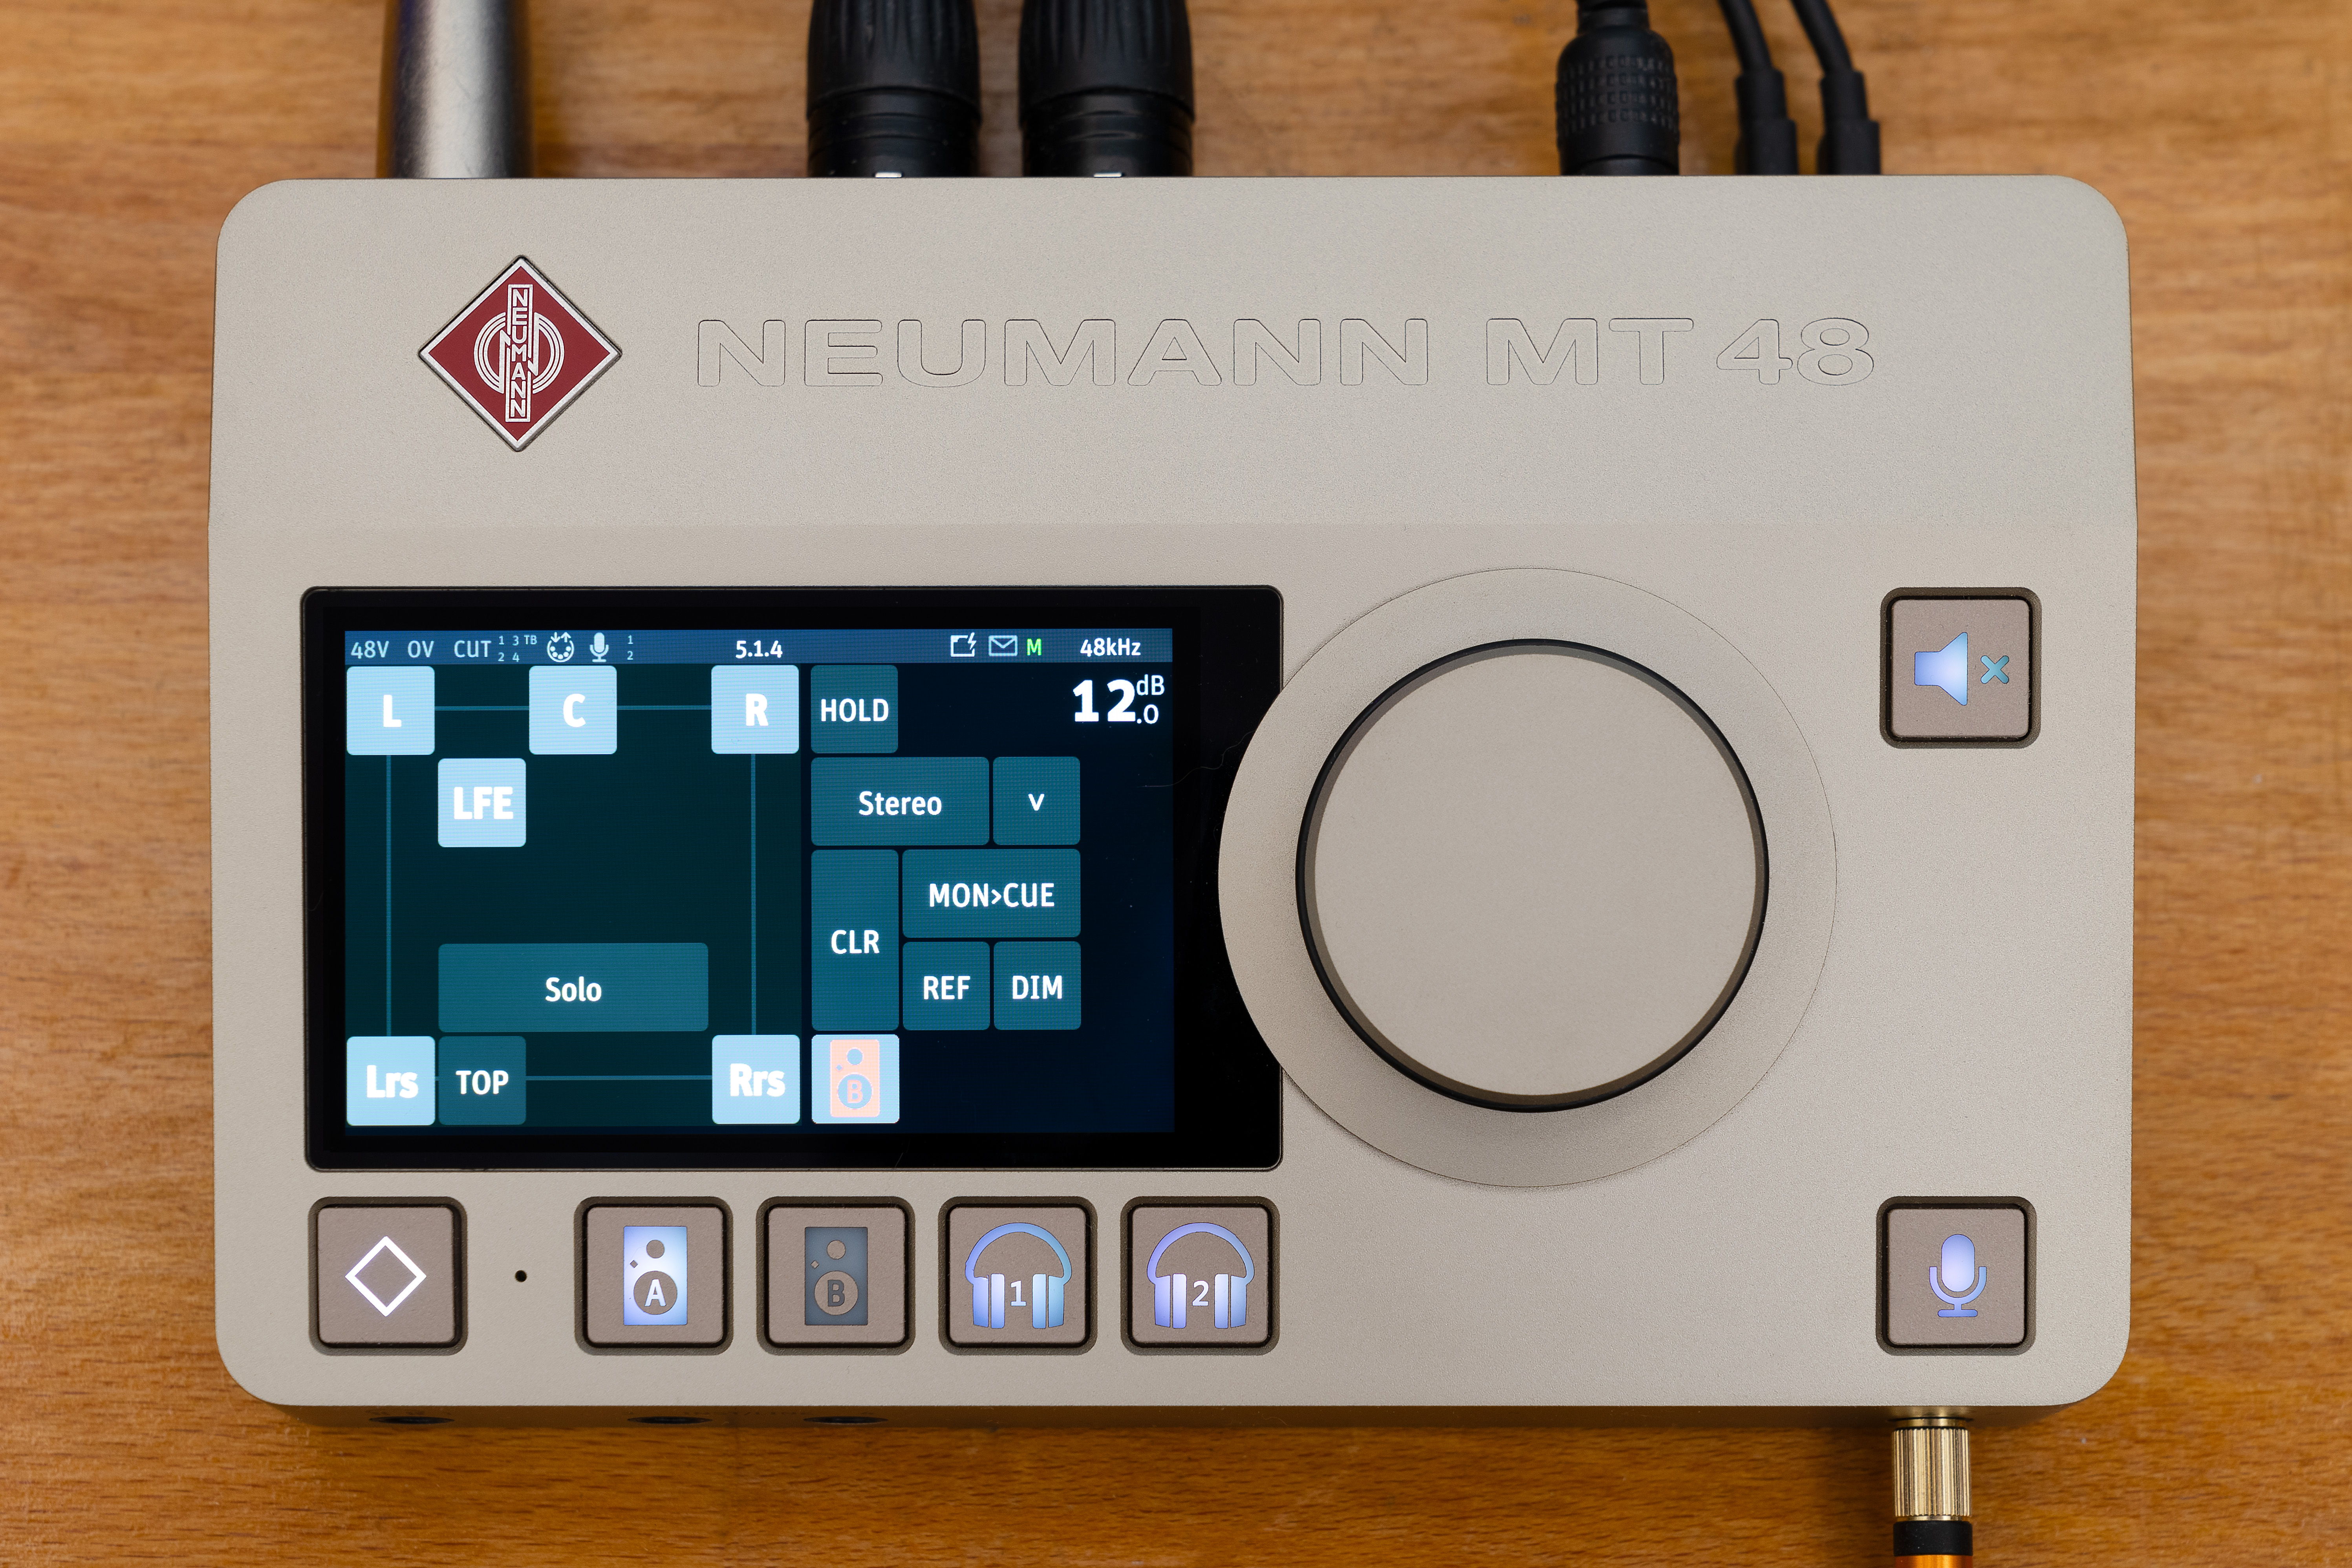 Das Neumann MT 48 Audio-Interface erhält ein Feature-Update, das die Arbeit mit immersiven Audioformaten ermöglicht